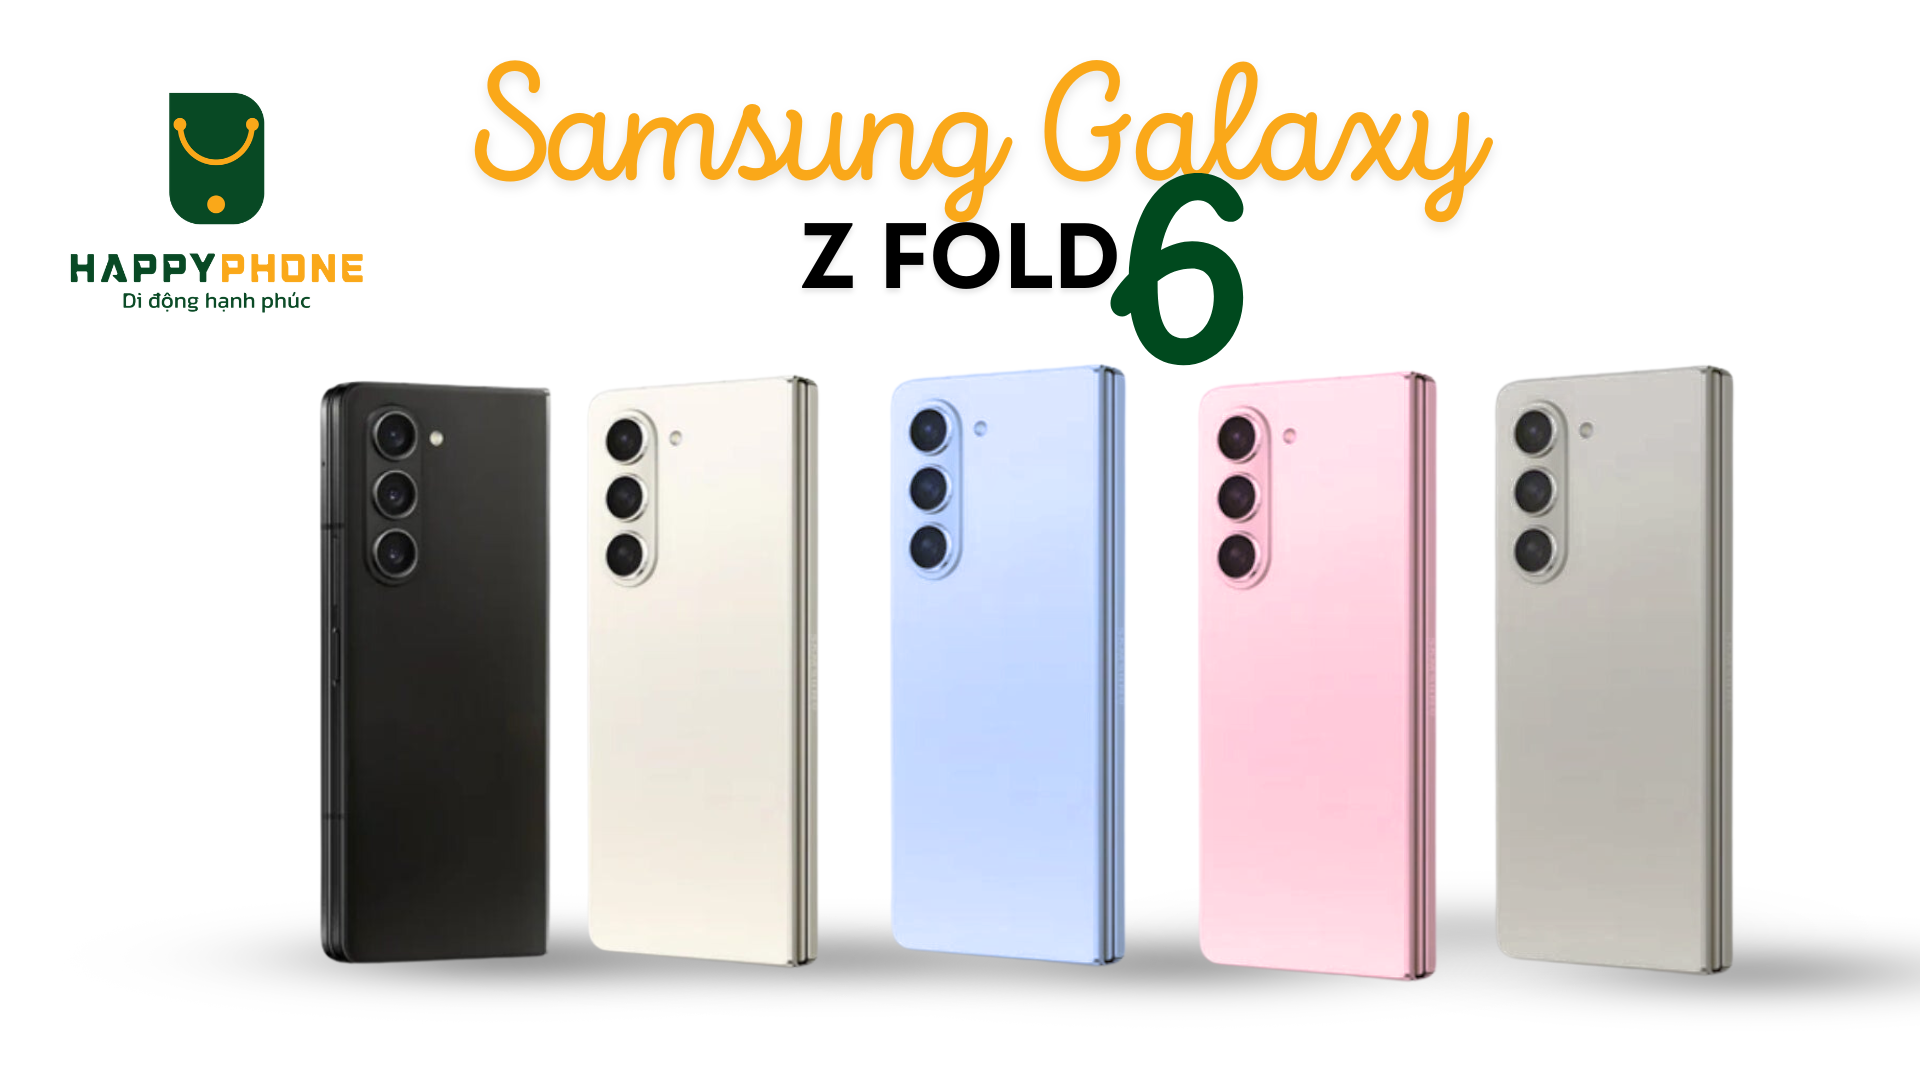 Samsung Galaxy Z Fold 6 có nhiều tùy chọn màu sắc khác nhau